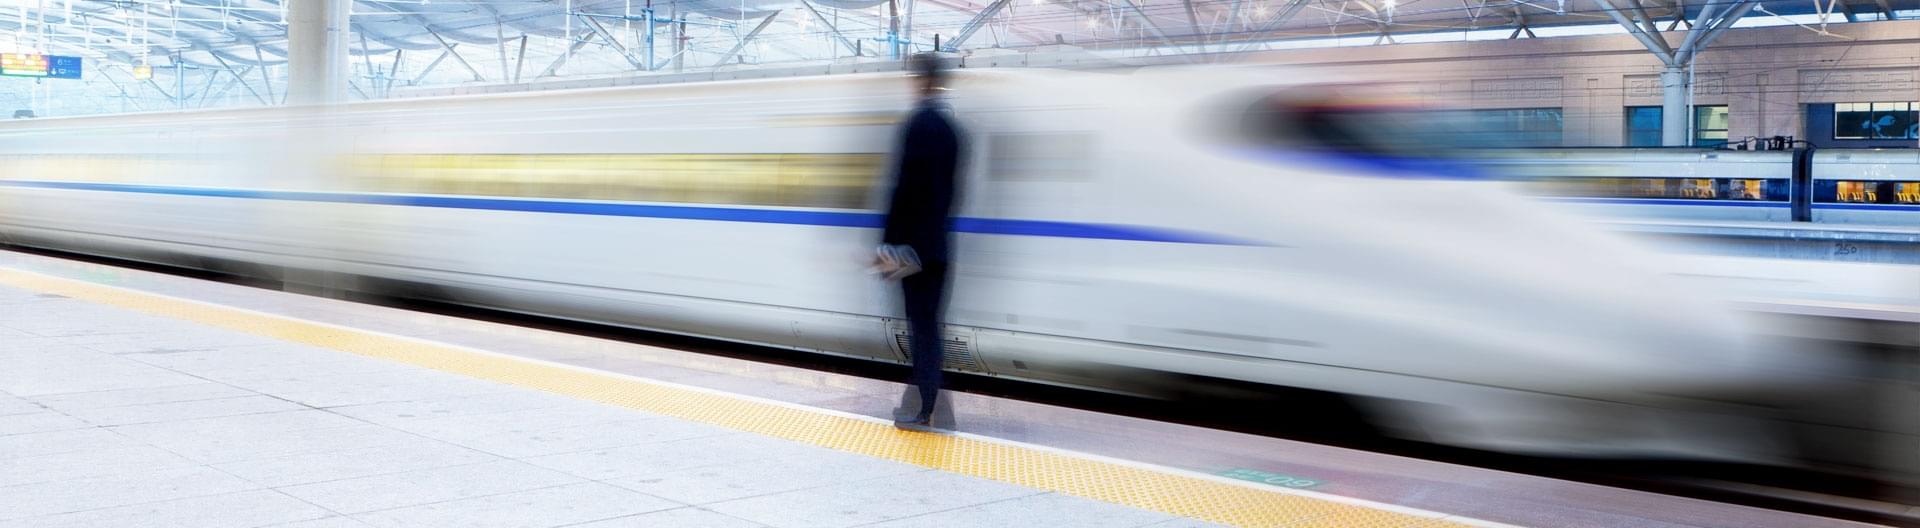 Weißer Schnellzug fährt an Passagier der am Bahnsteig steht vorbei